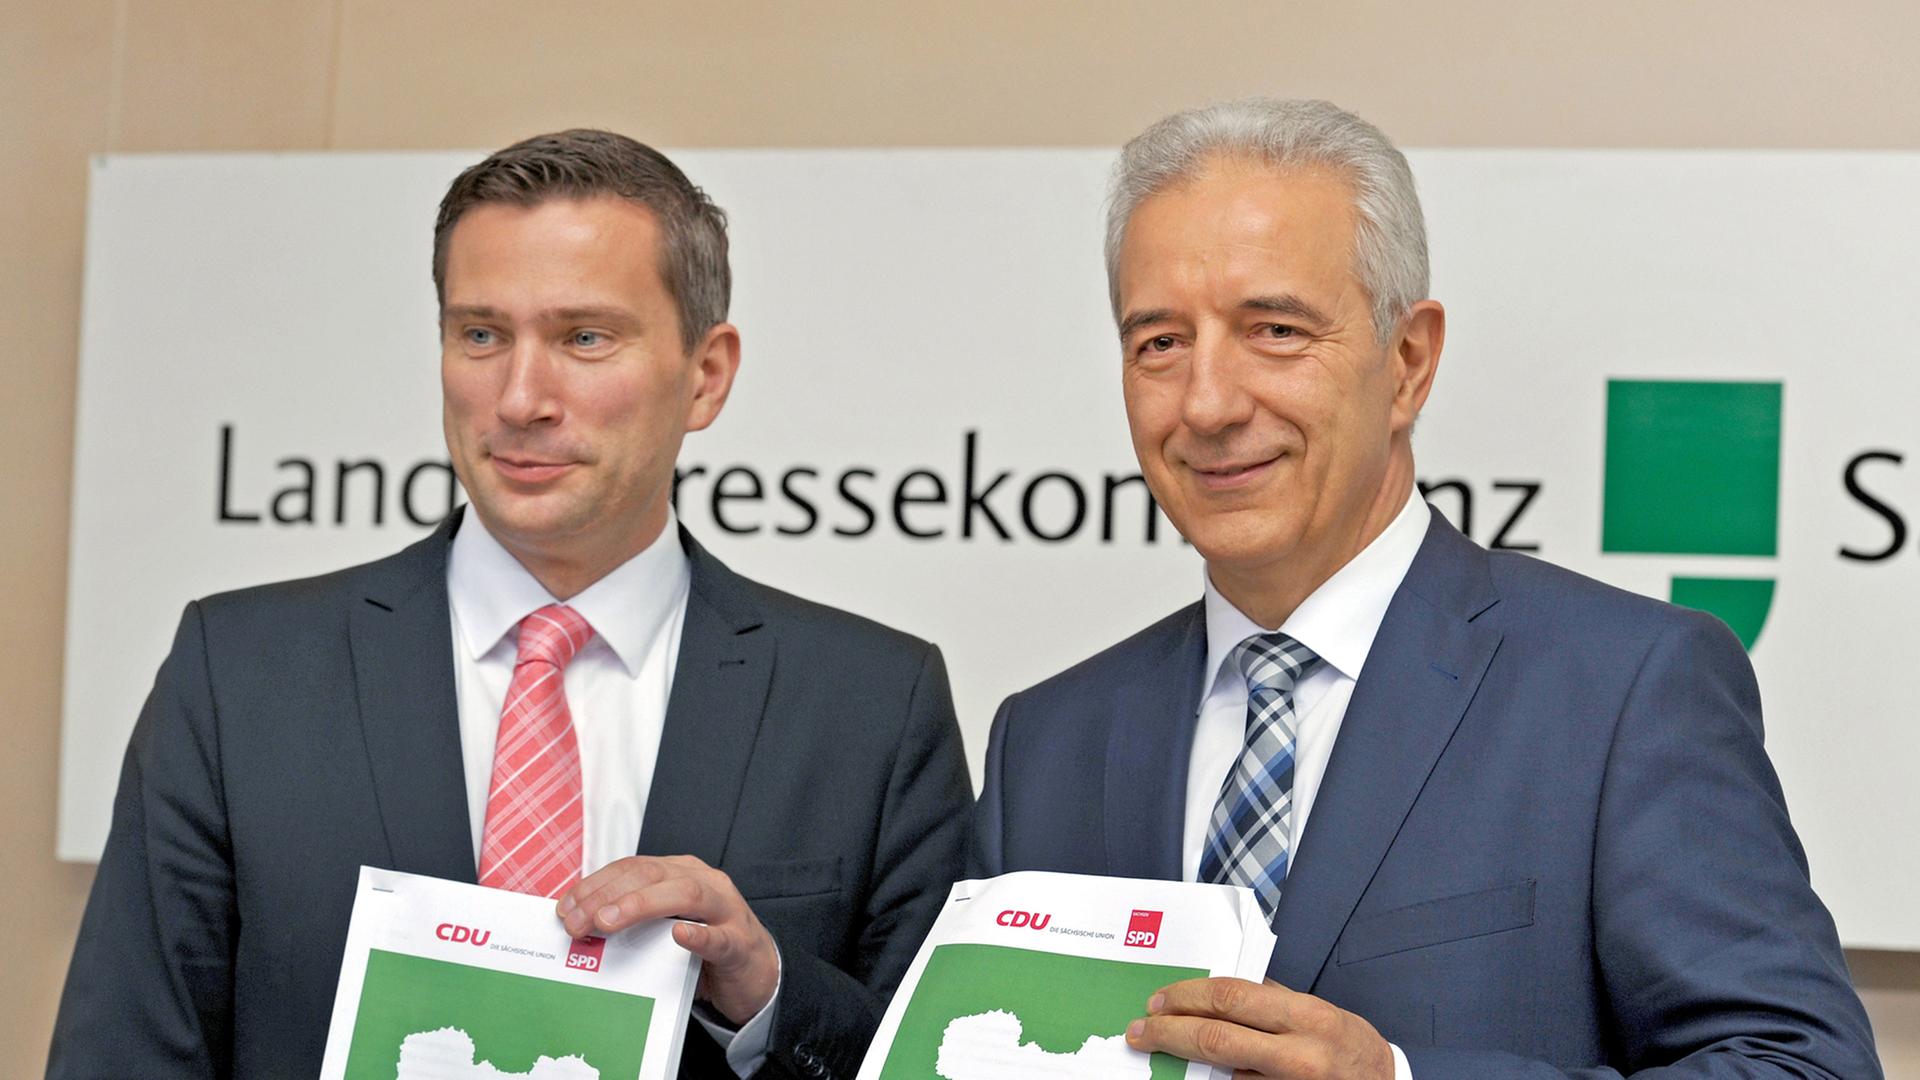 Der Landesvorsitzende der sächsischen SPD, Martin Duhlig, und Ministerpräsident Stanislaw Tillich von der CDU bei der Vorstellung ihres Koalitionsvertrages.